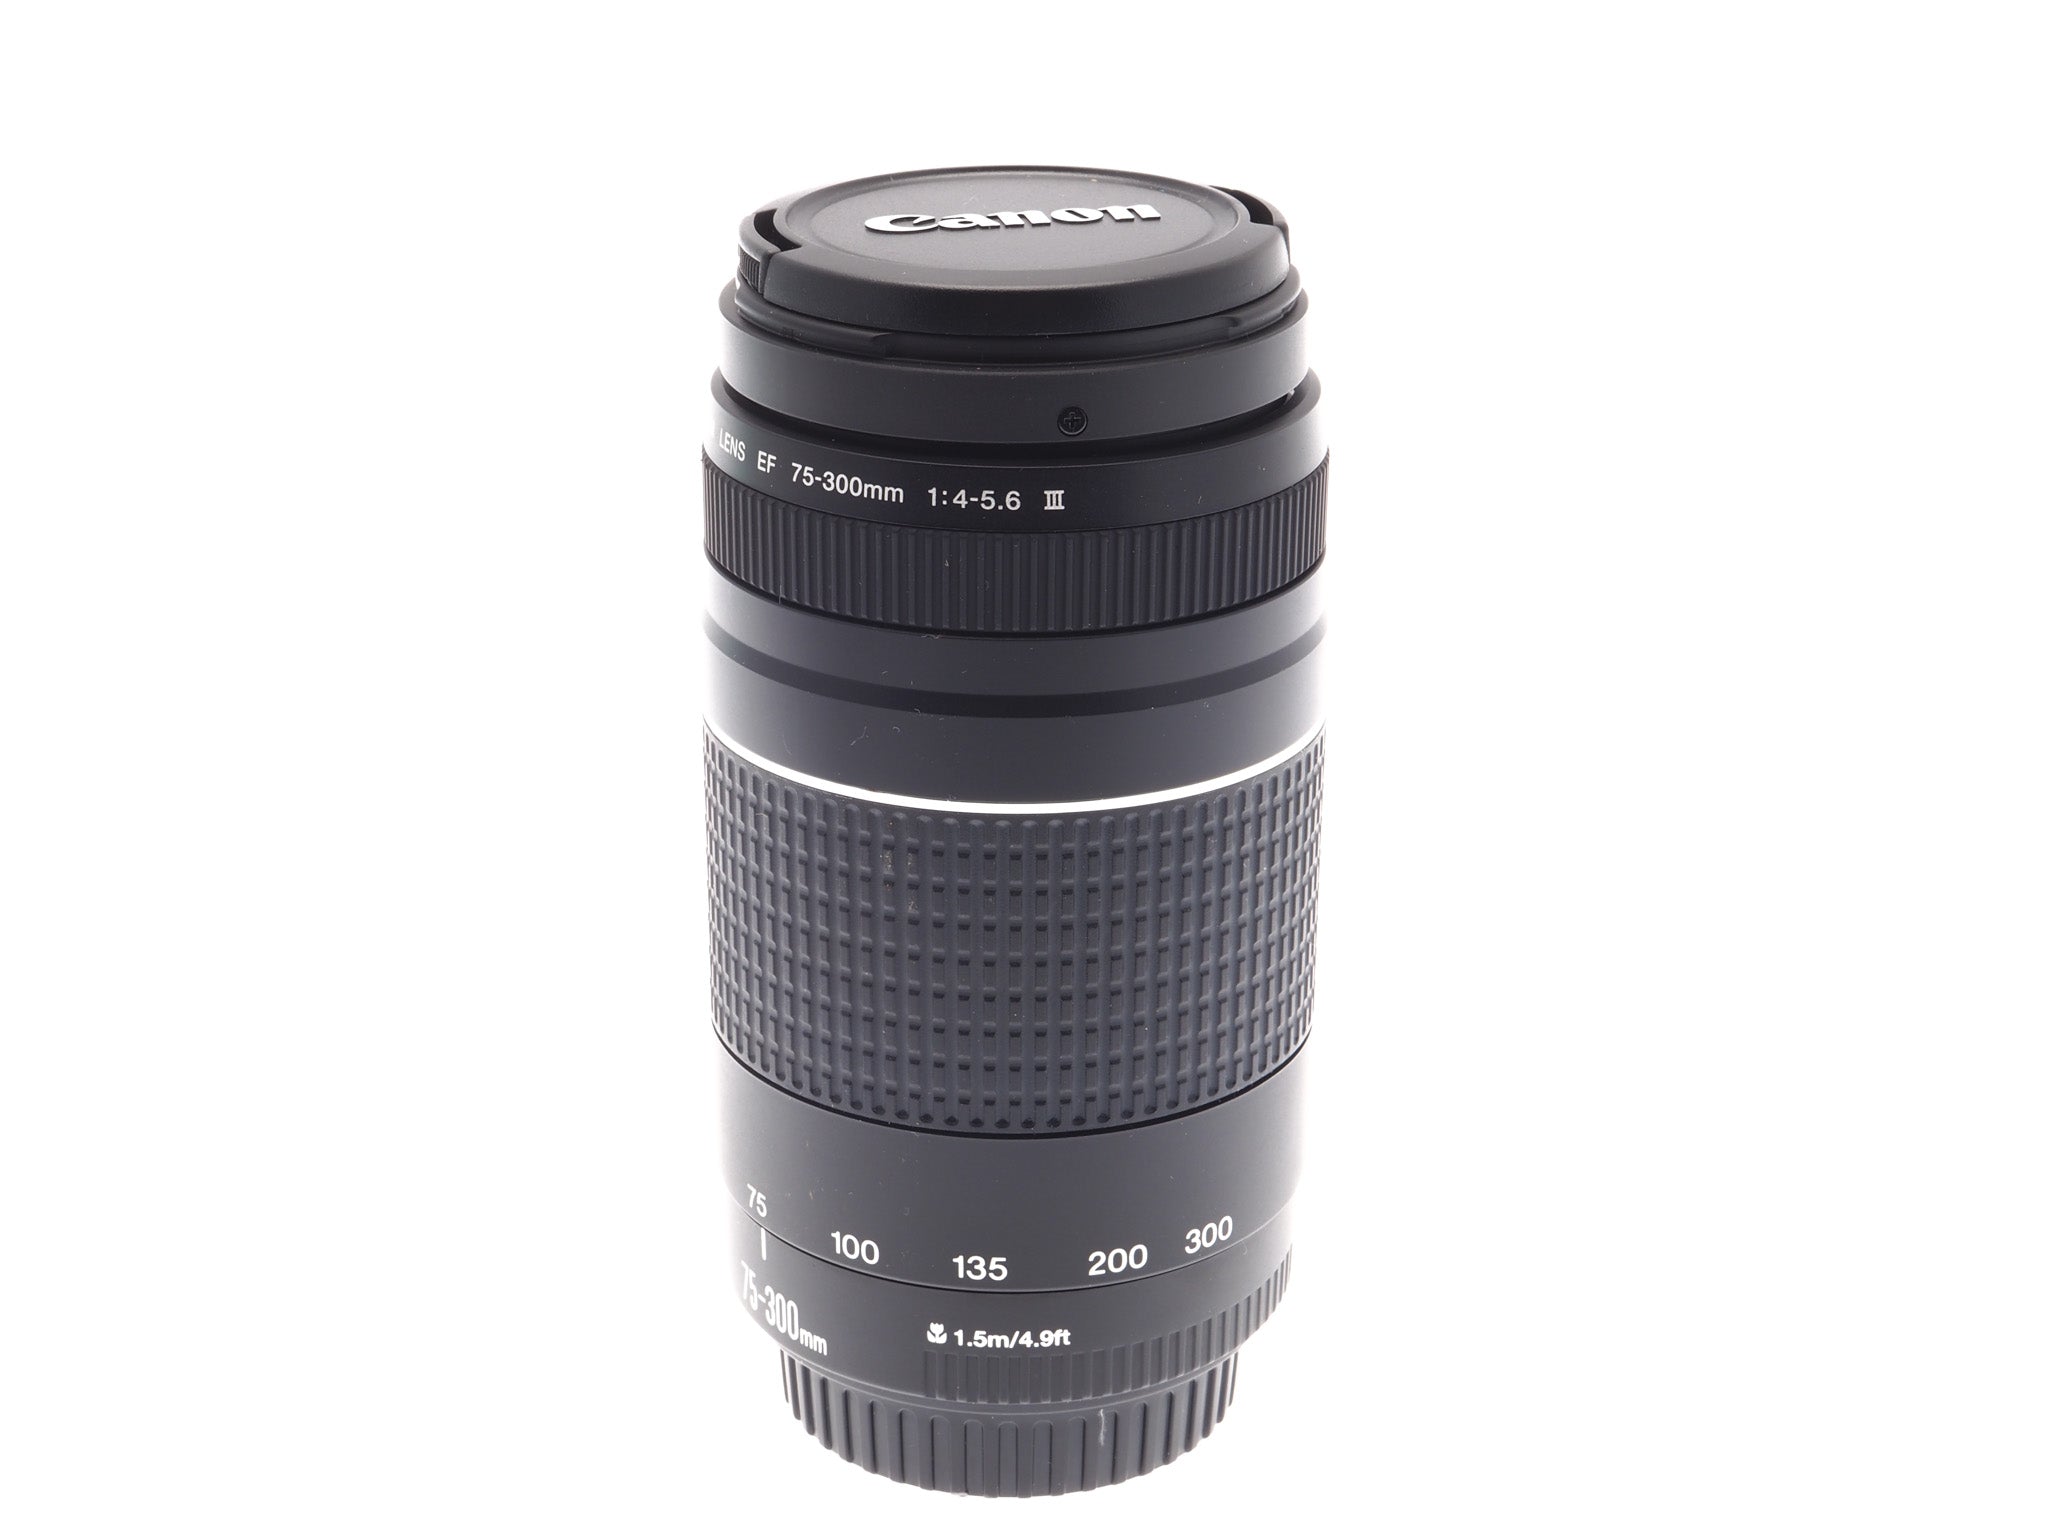 Canon 75-300mm - Kamerastore f4-5.6 III Lens –